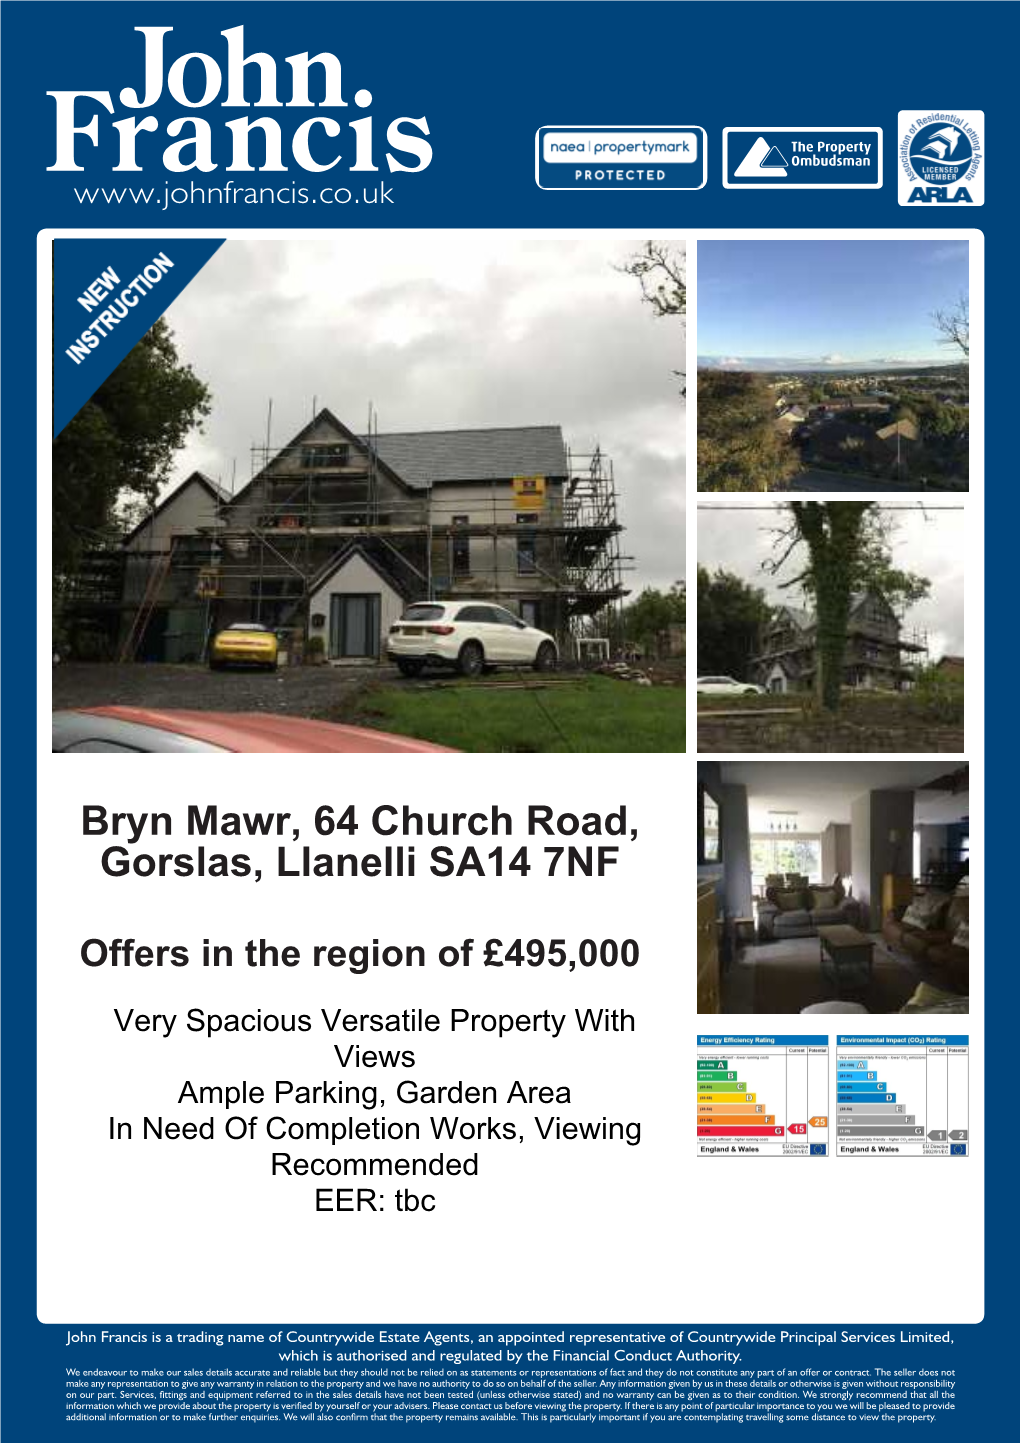 Bryn Mawr, 64 Church Road, Gorslas, Llanelli SA14 7NF